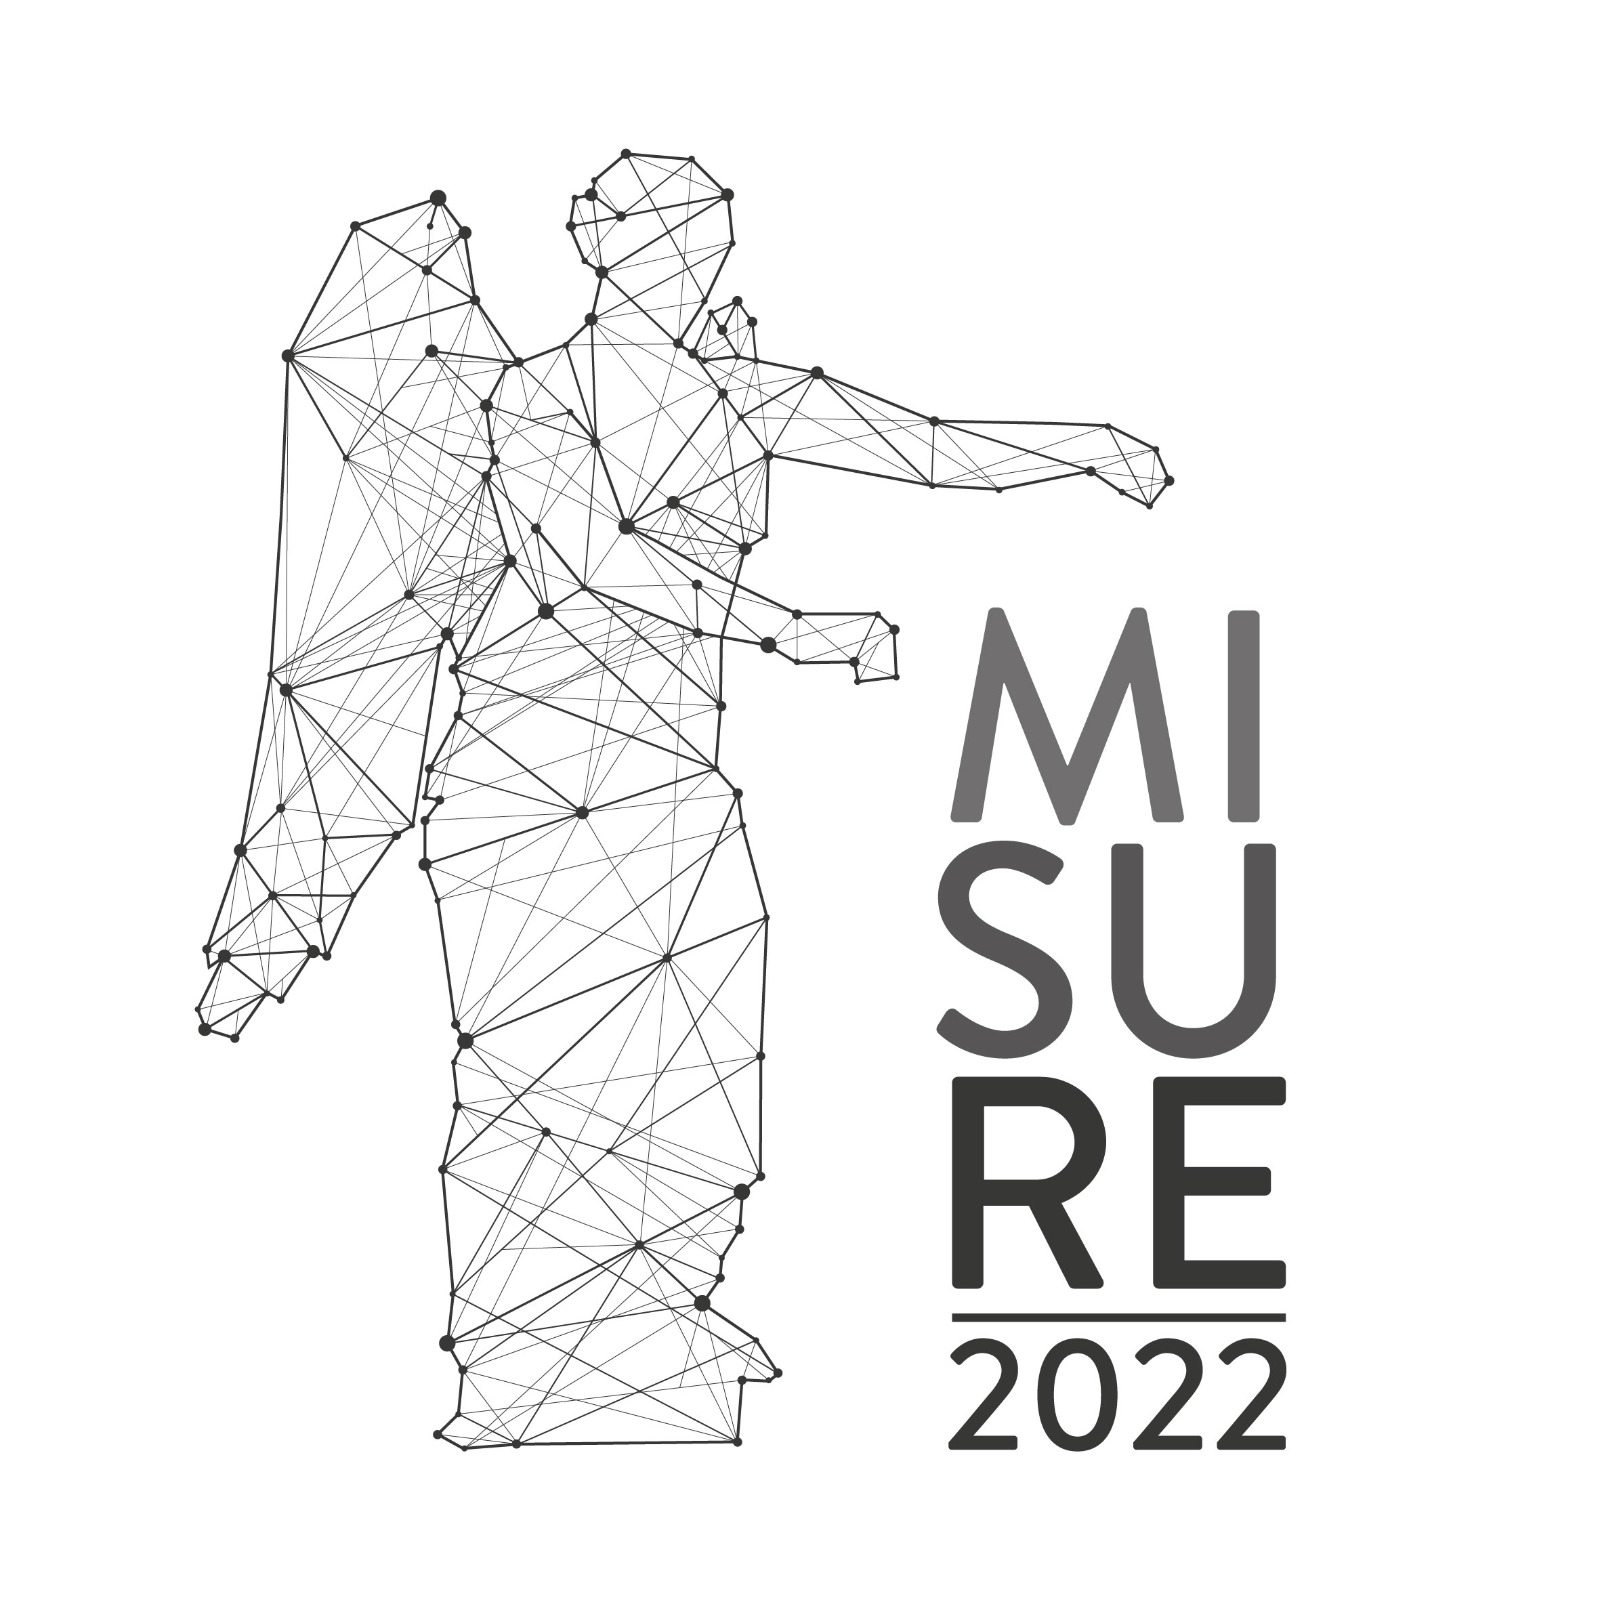 Forum Misure 2022